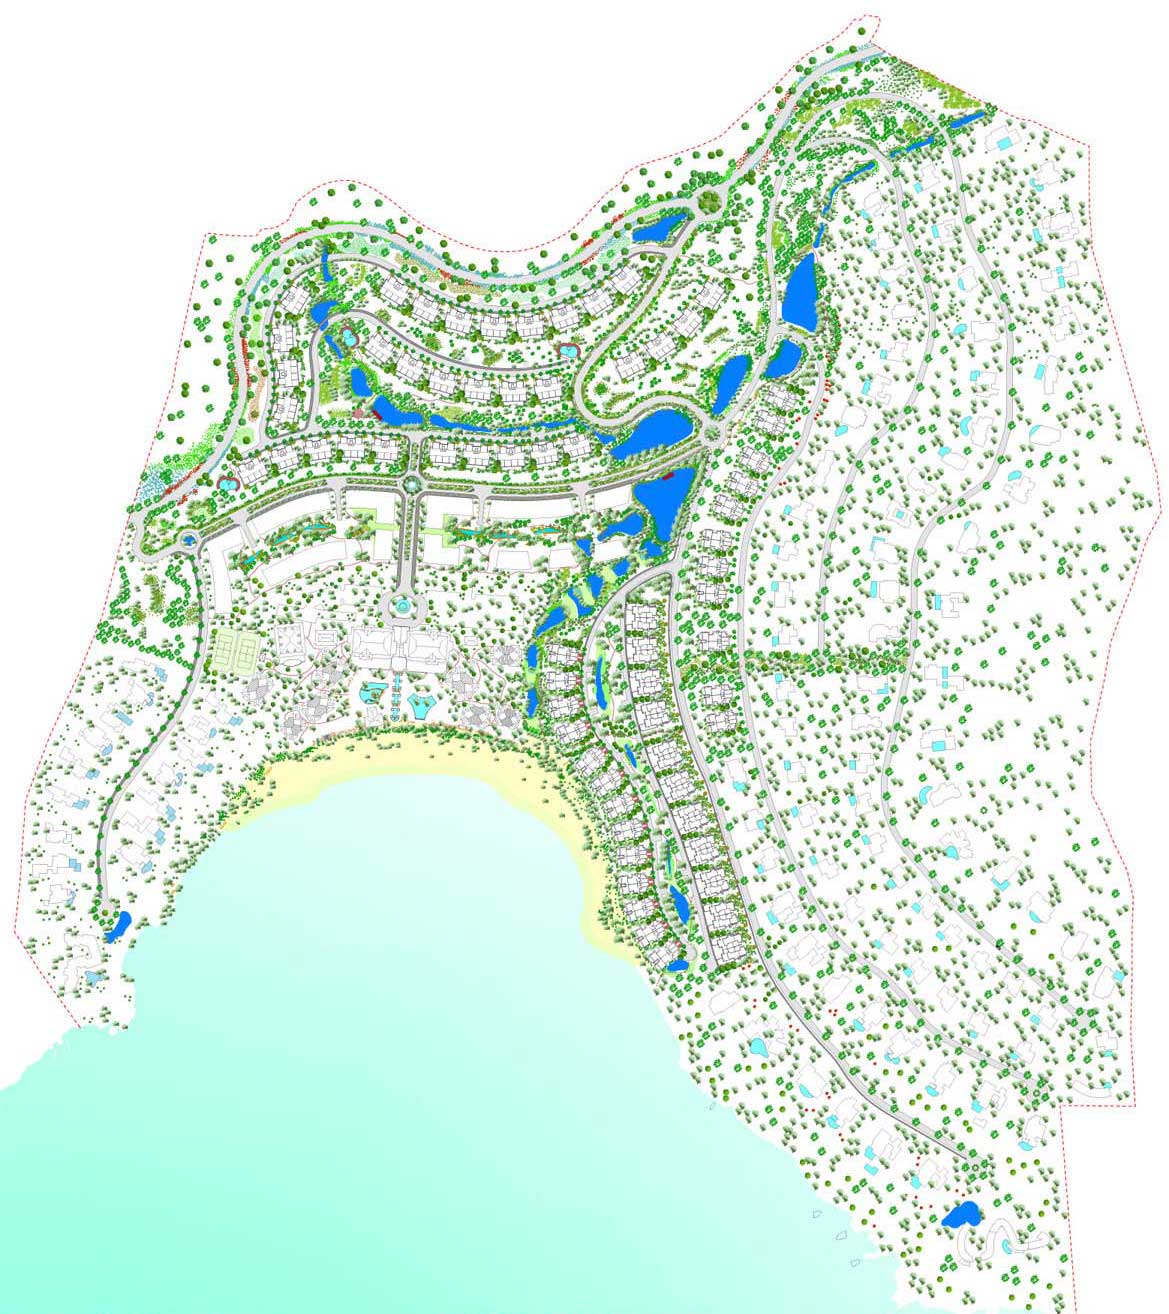 Eco plan Indigo Bay